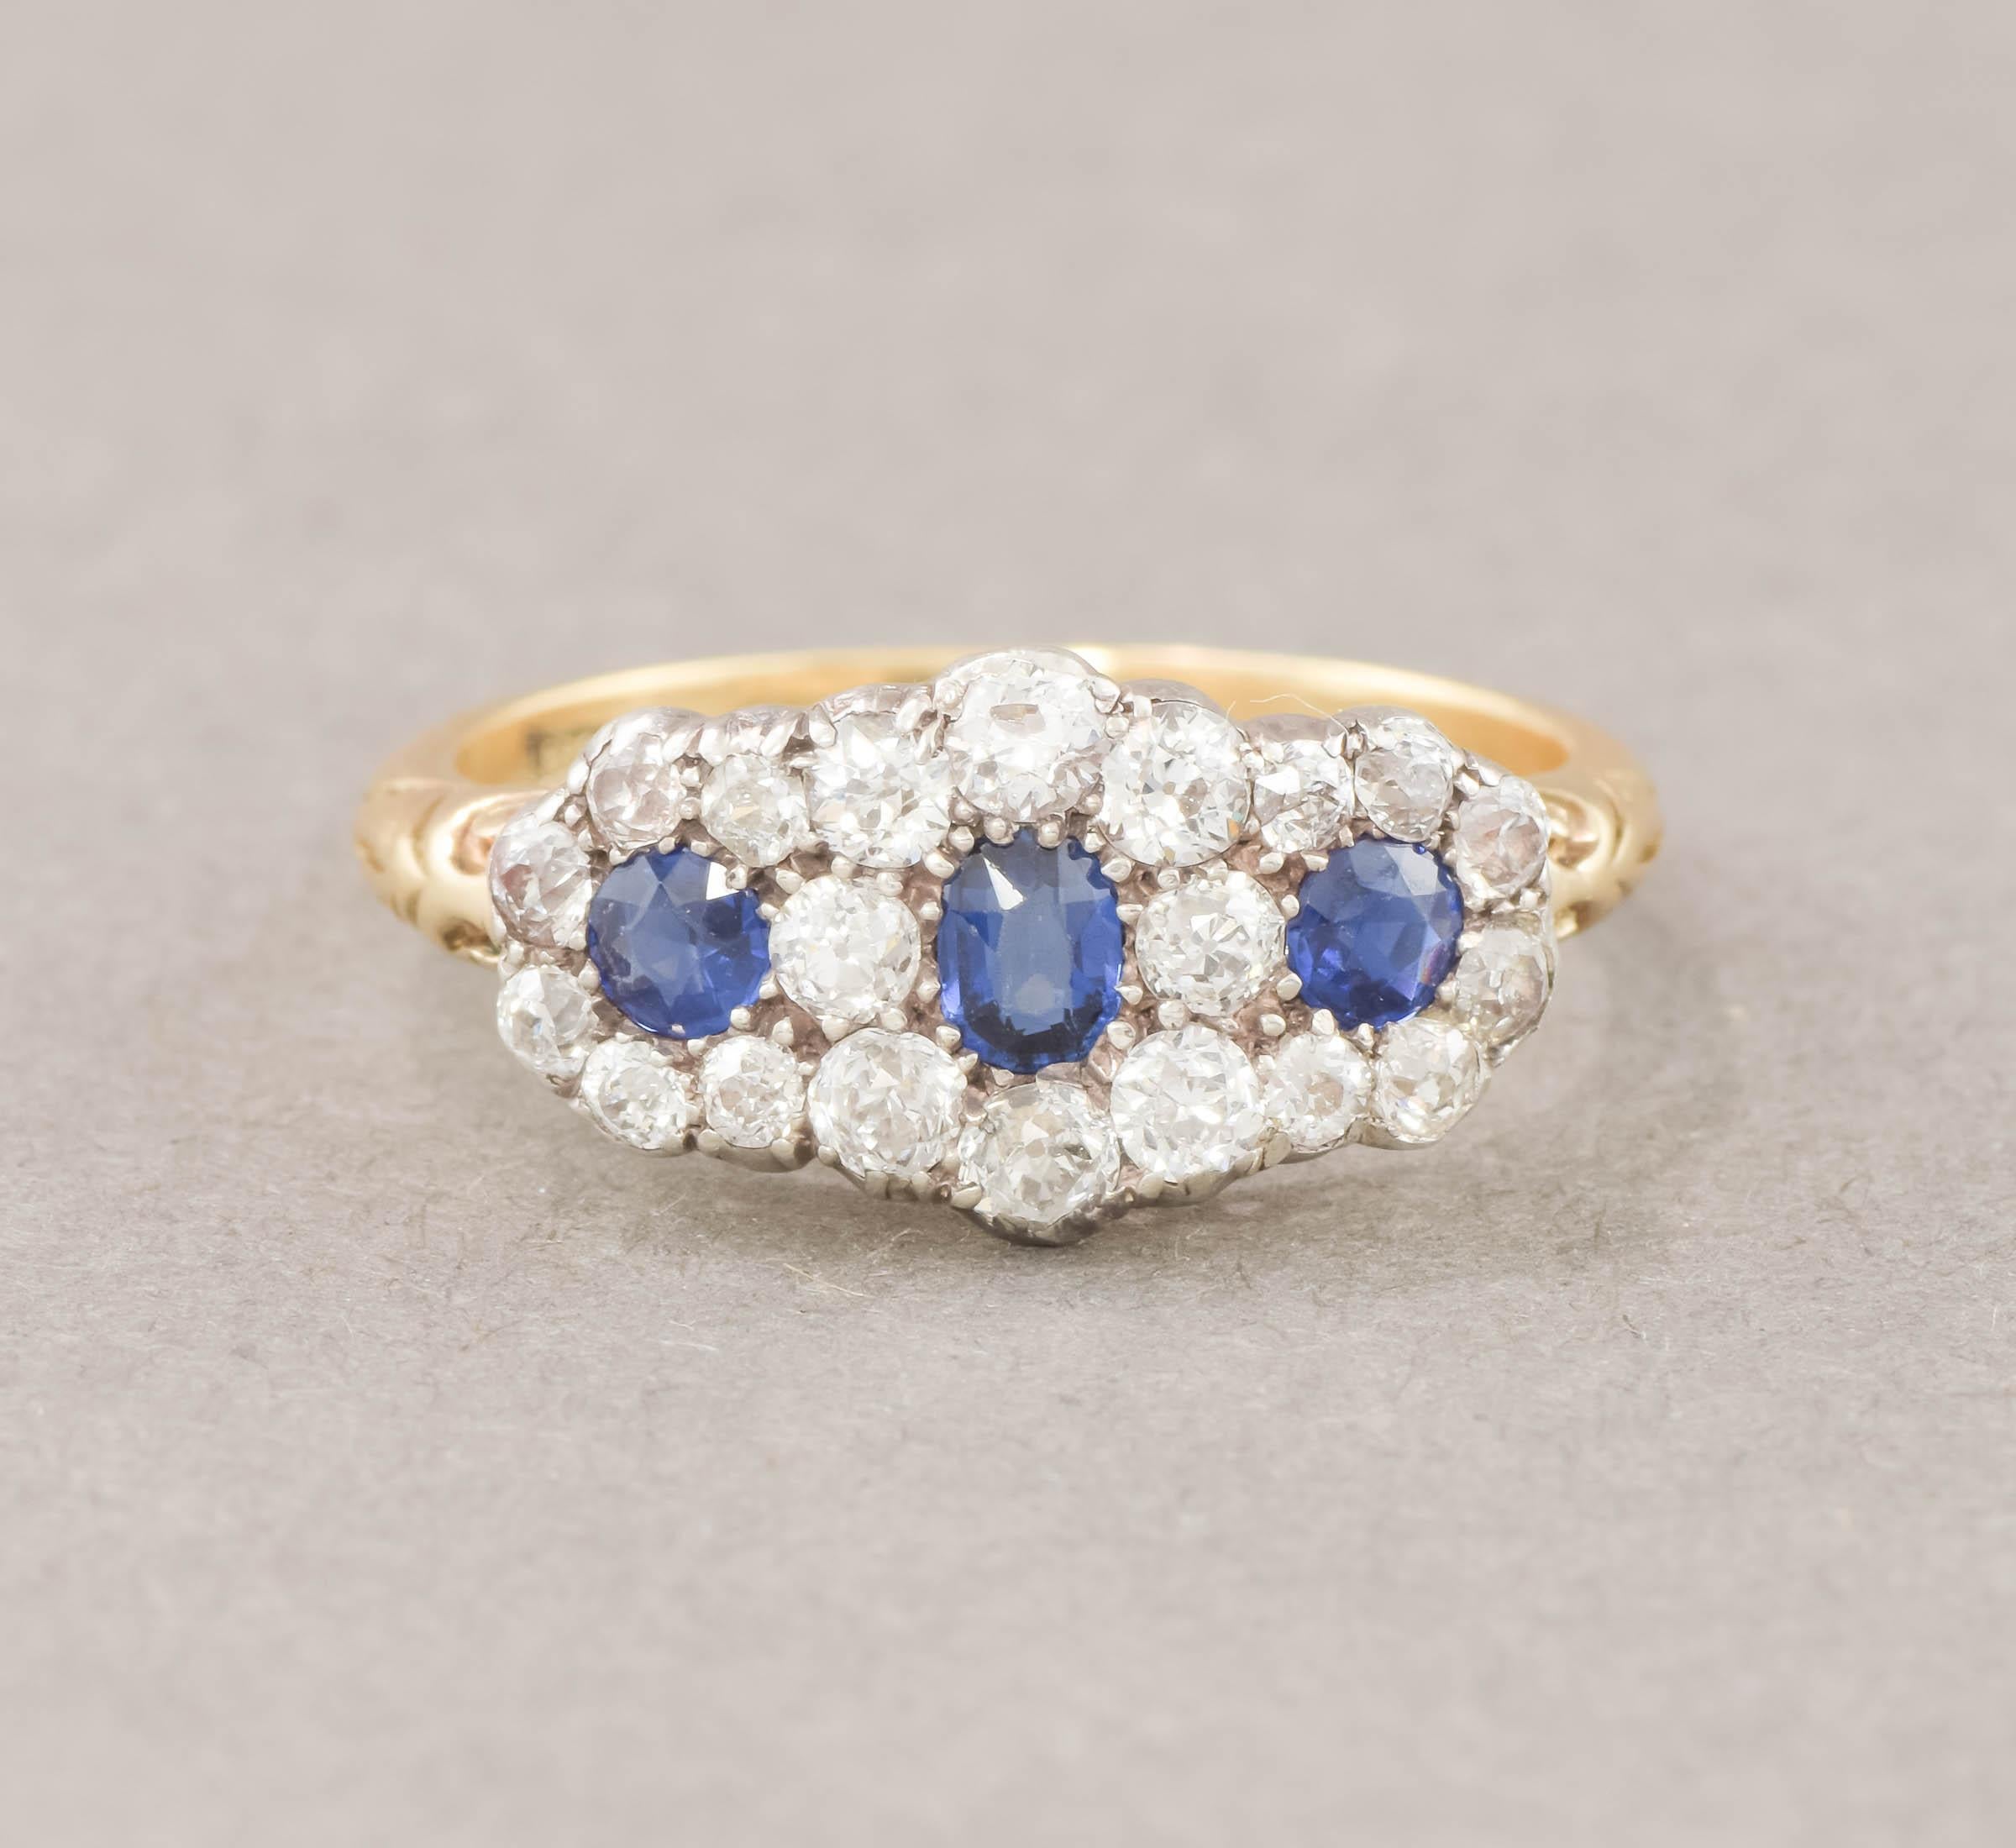 Eleg est une élégante et extrêmement brillante bague de la fin de l'époque victorienne à diamant de taille européenne et saphir bleu.

Estimée à environ 1,20 carat de diamants de taille ancienne brillants et ardents et à environ 0,56 carat de